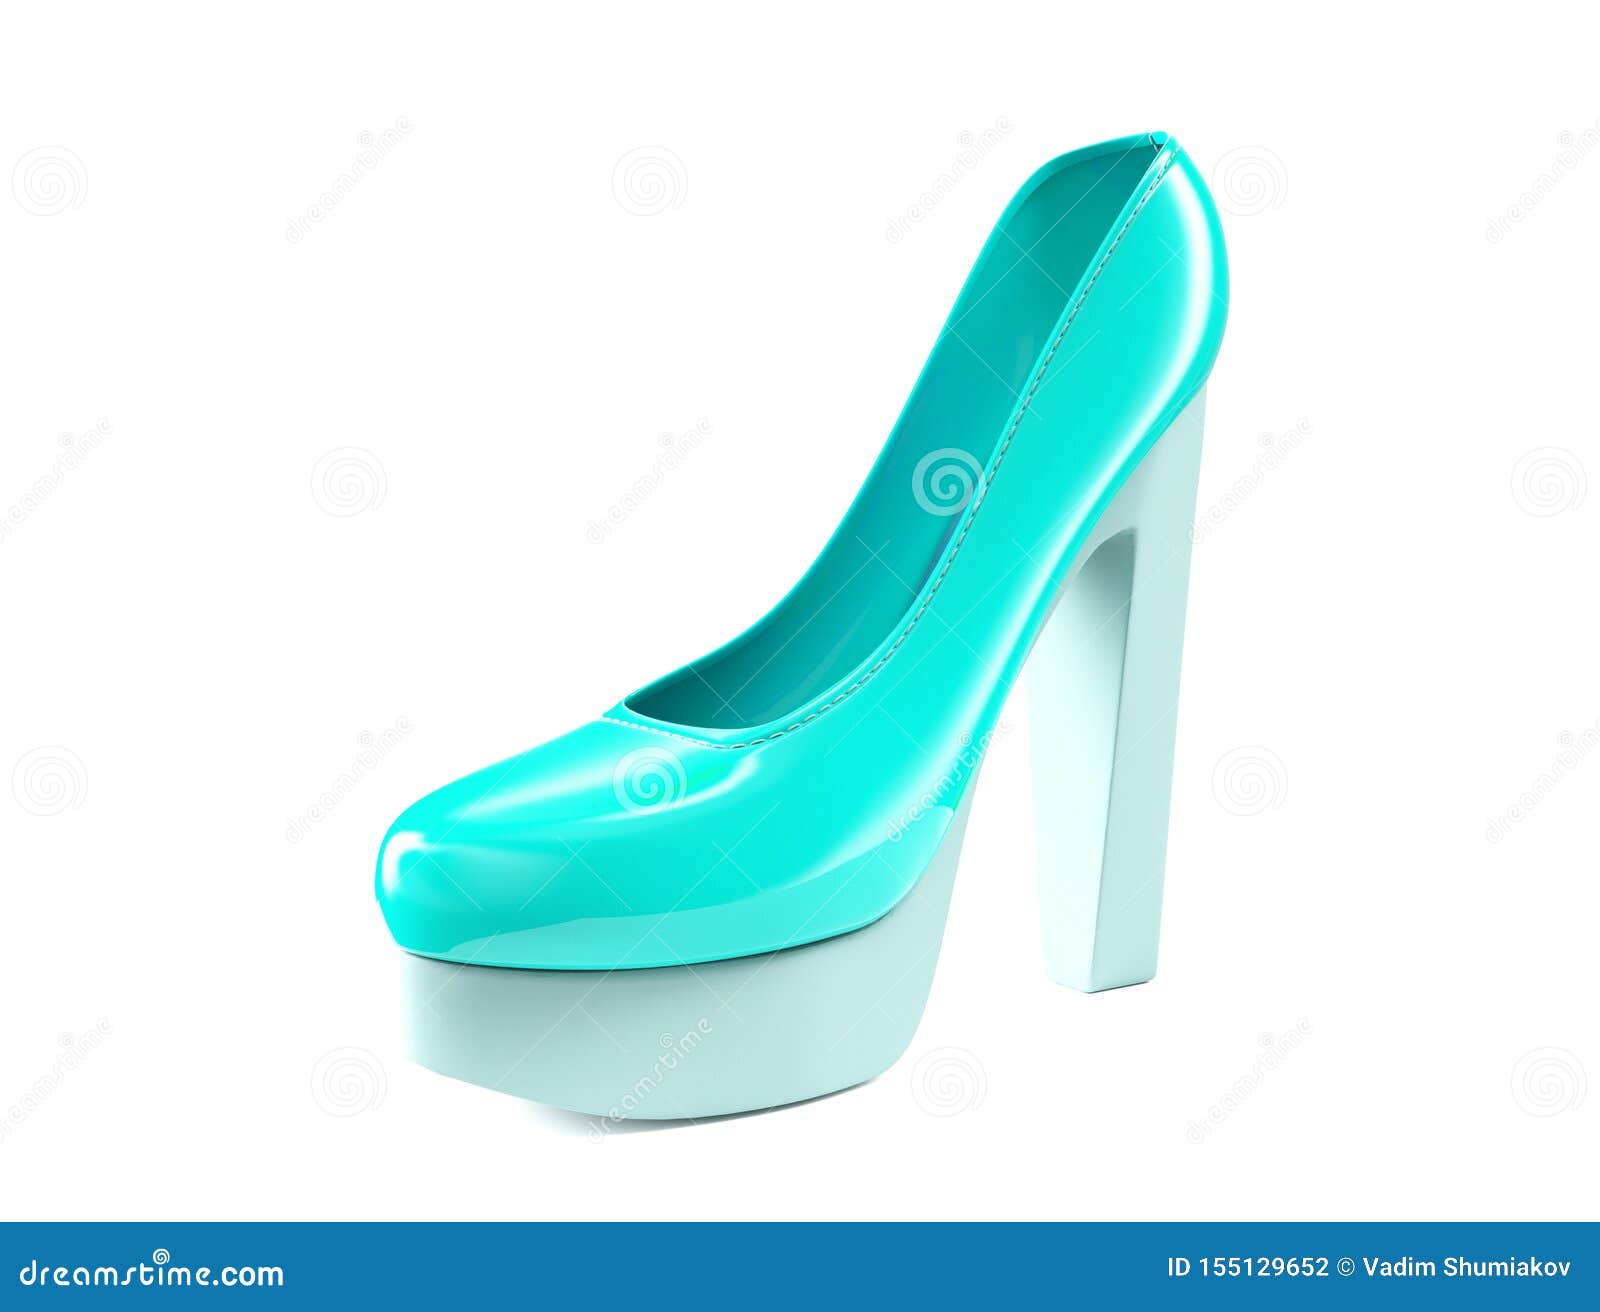 light blue high heel shoes 3d render